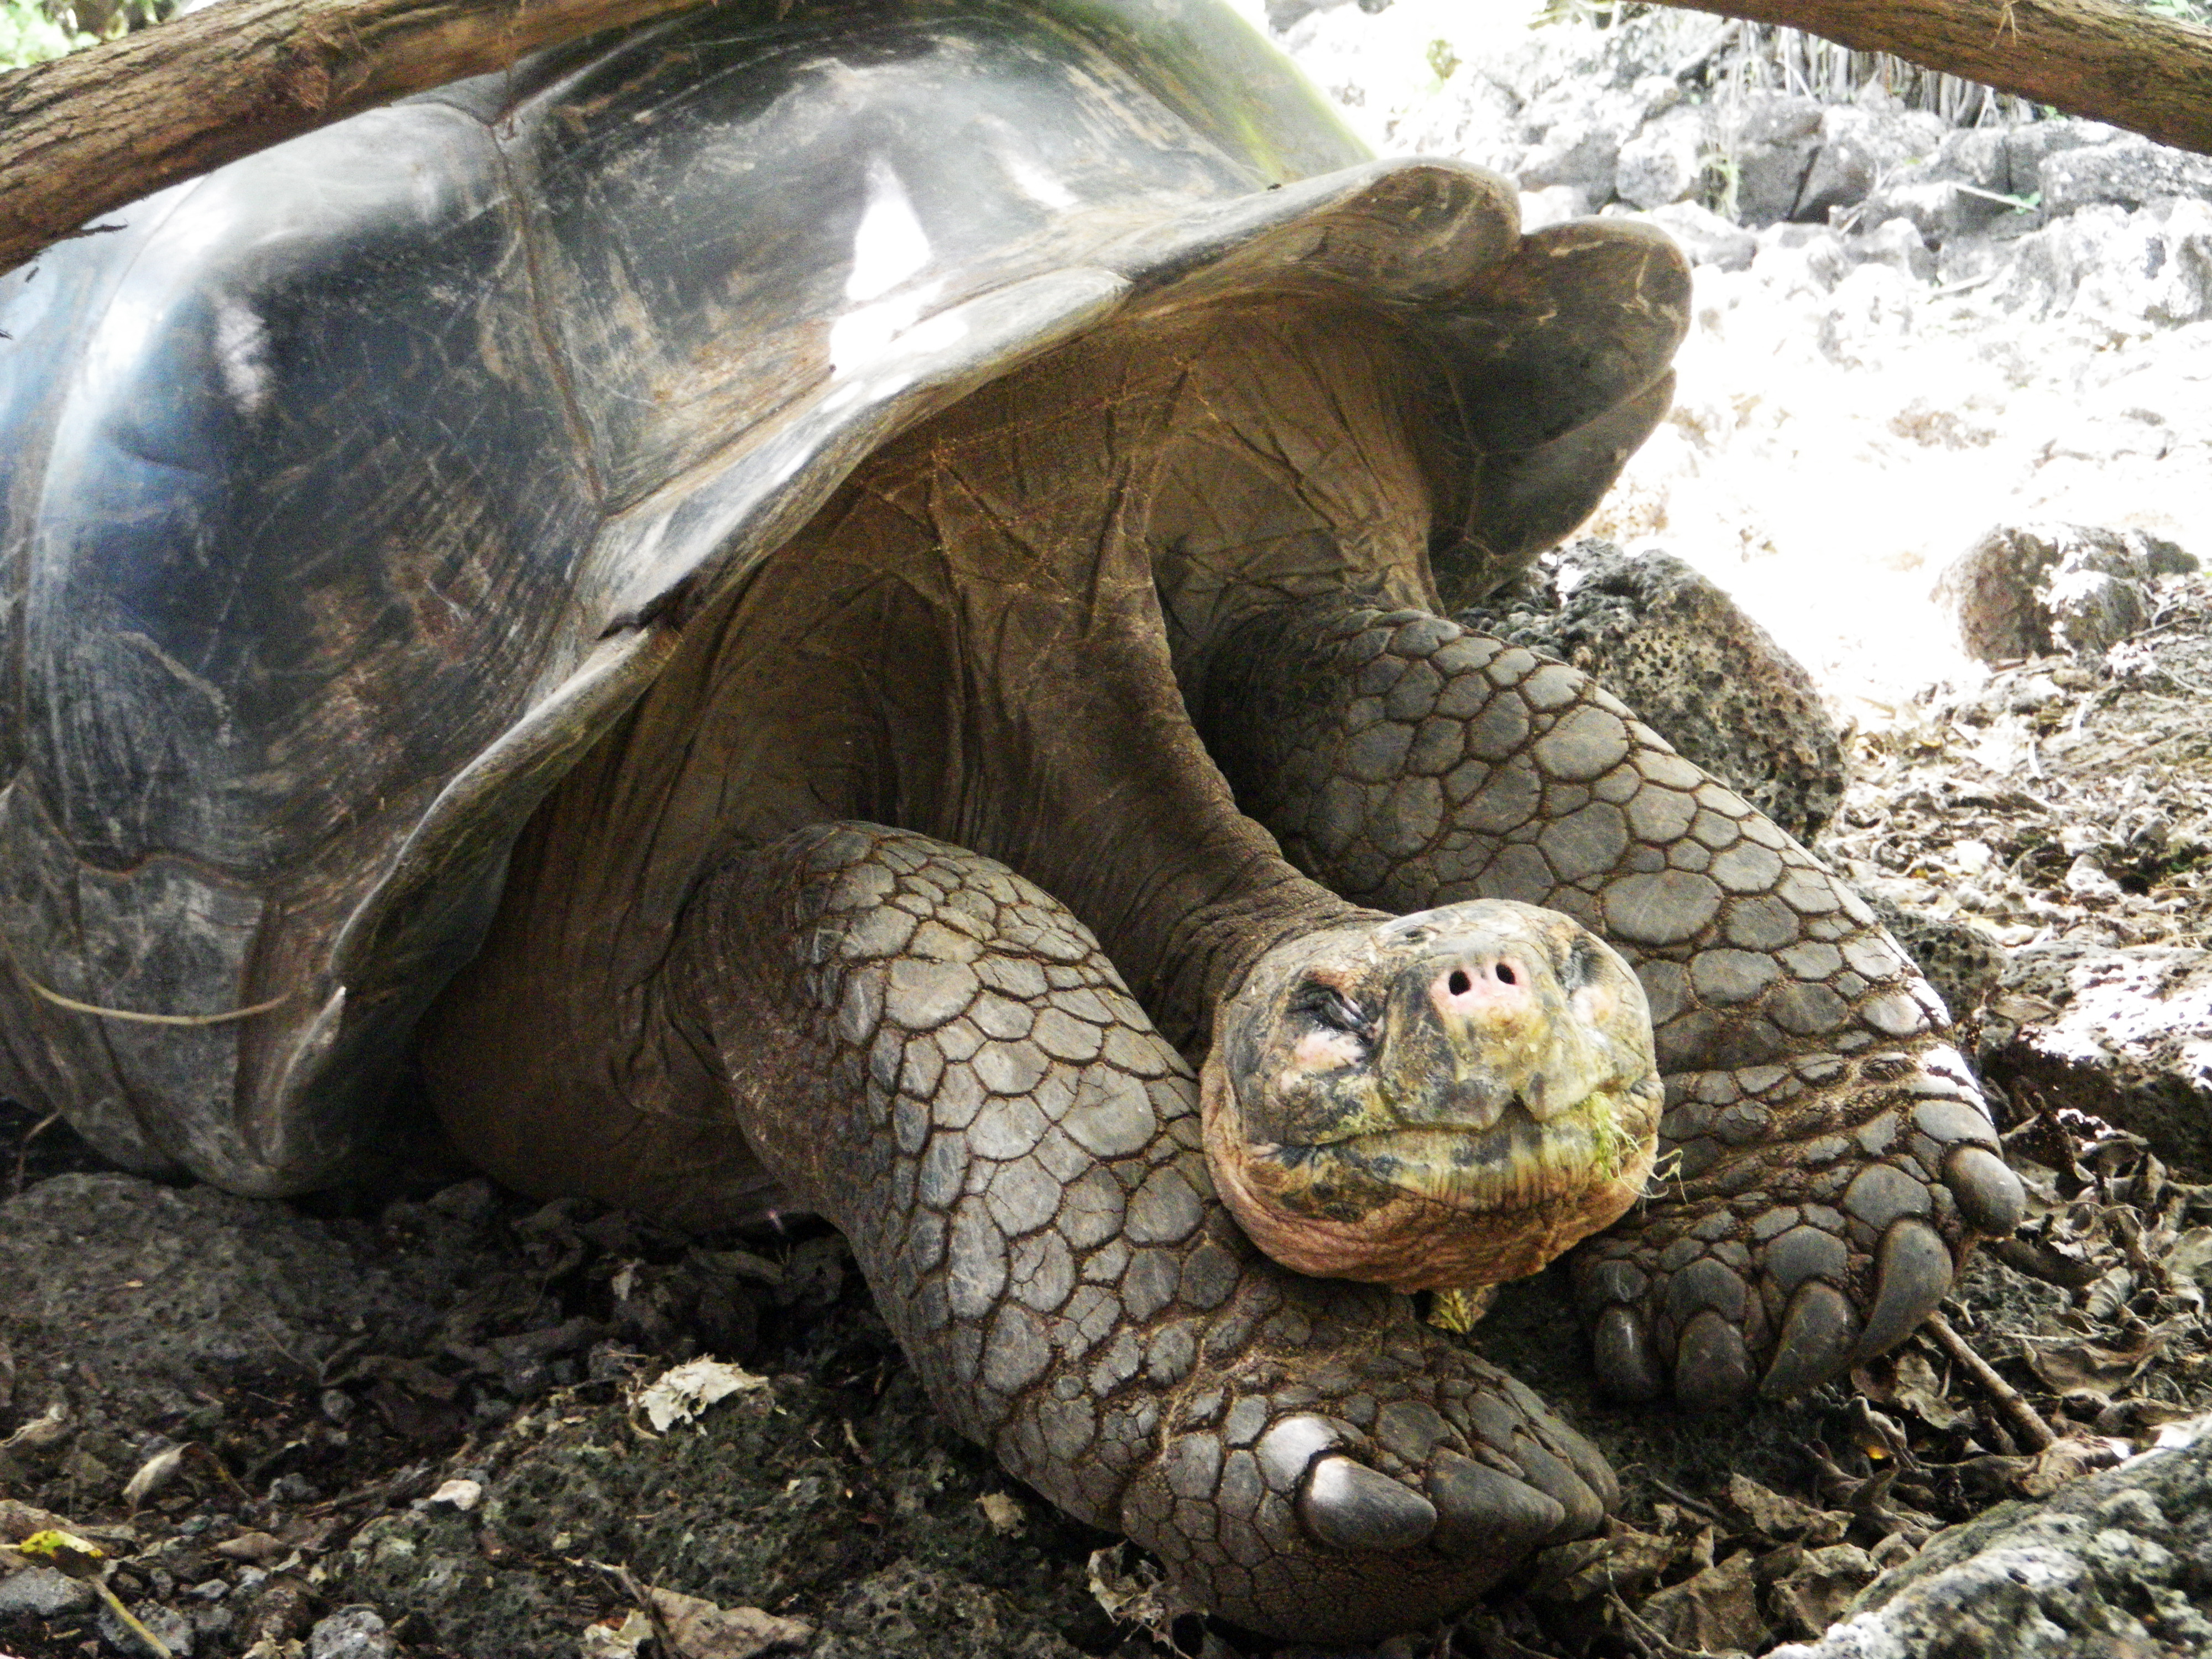 wp-content/uploads/itineraries/Galapagos/032610galapagos_charlesdarwin_tortoise (13).JPG